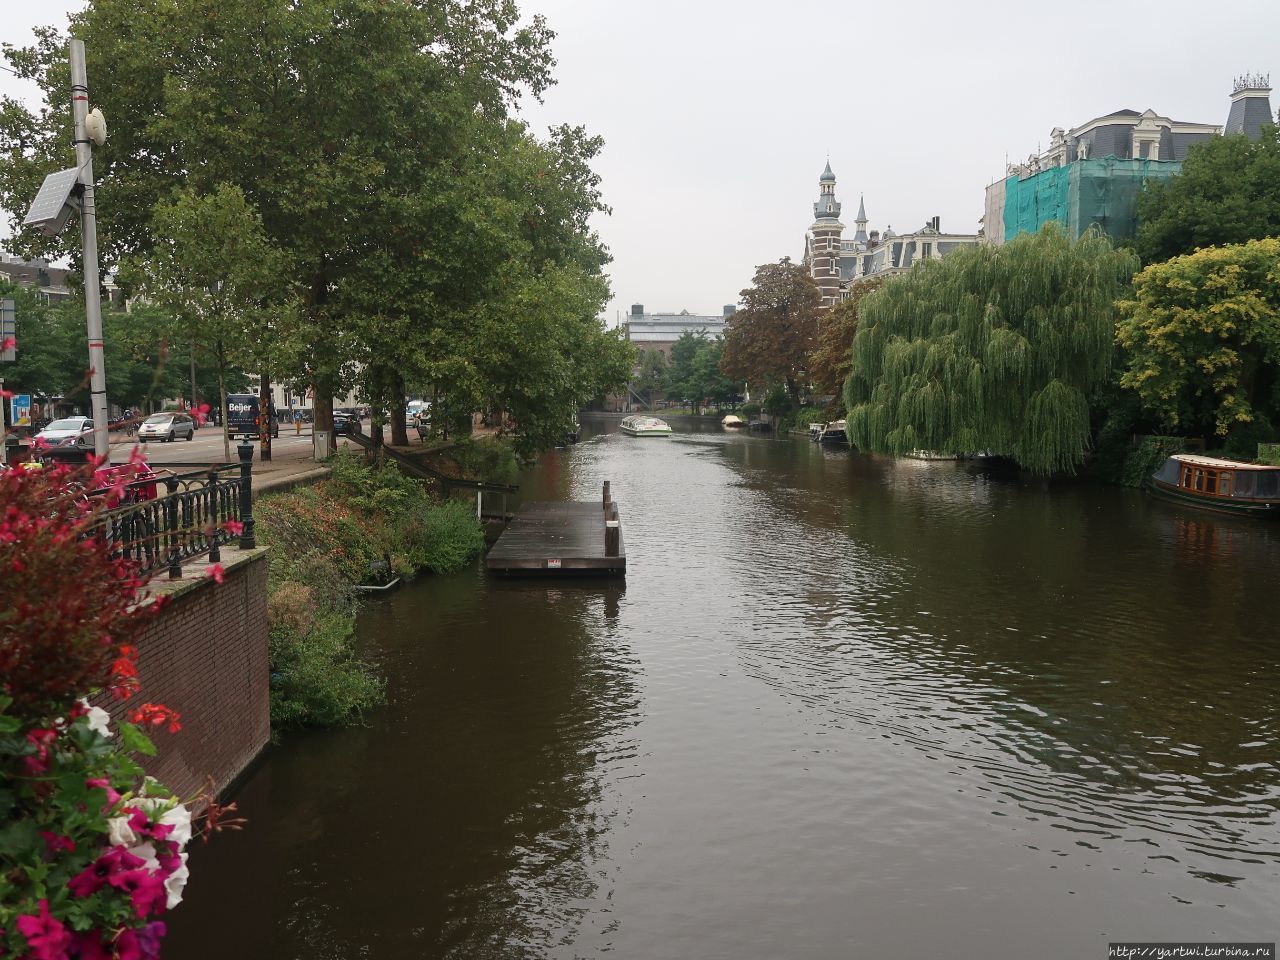 Переходим первый канал, экскурсовод шутит, что глубина канала 3 метра: метр воды, метр ила и метр велосипедов. Амстердам, Нидерланды